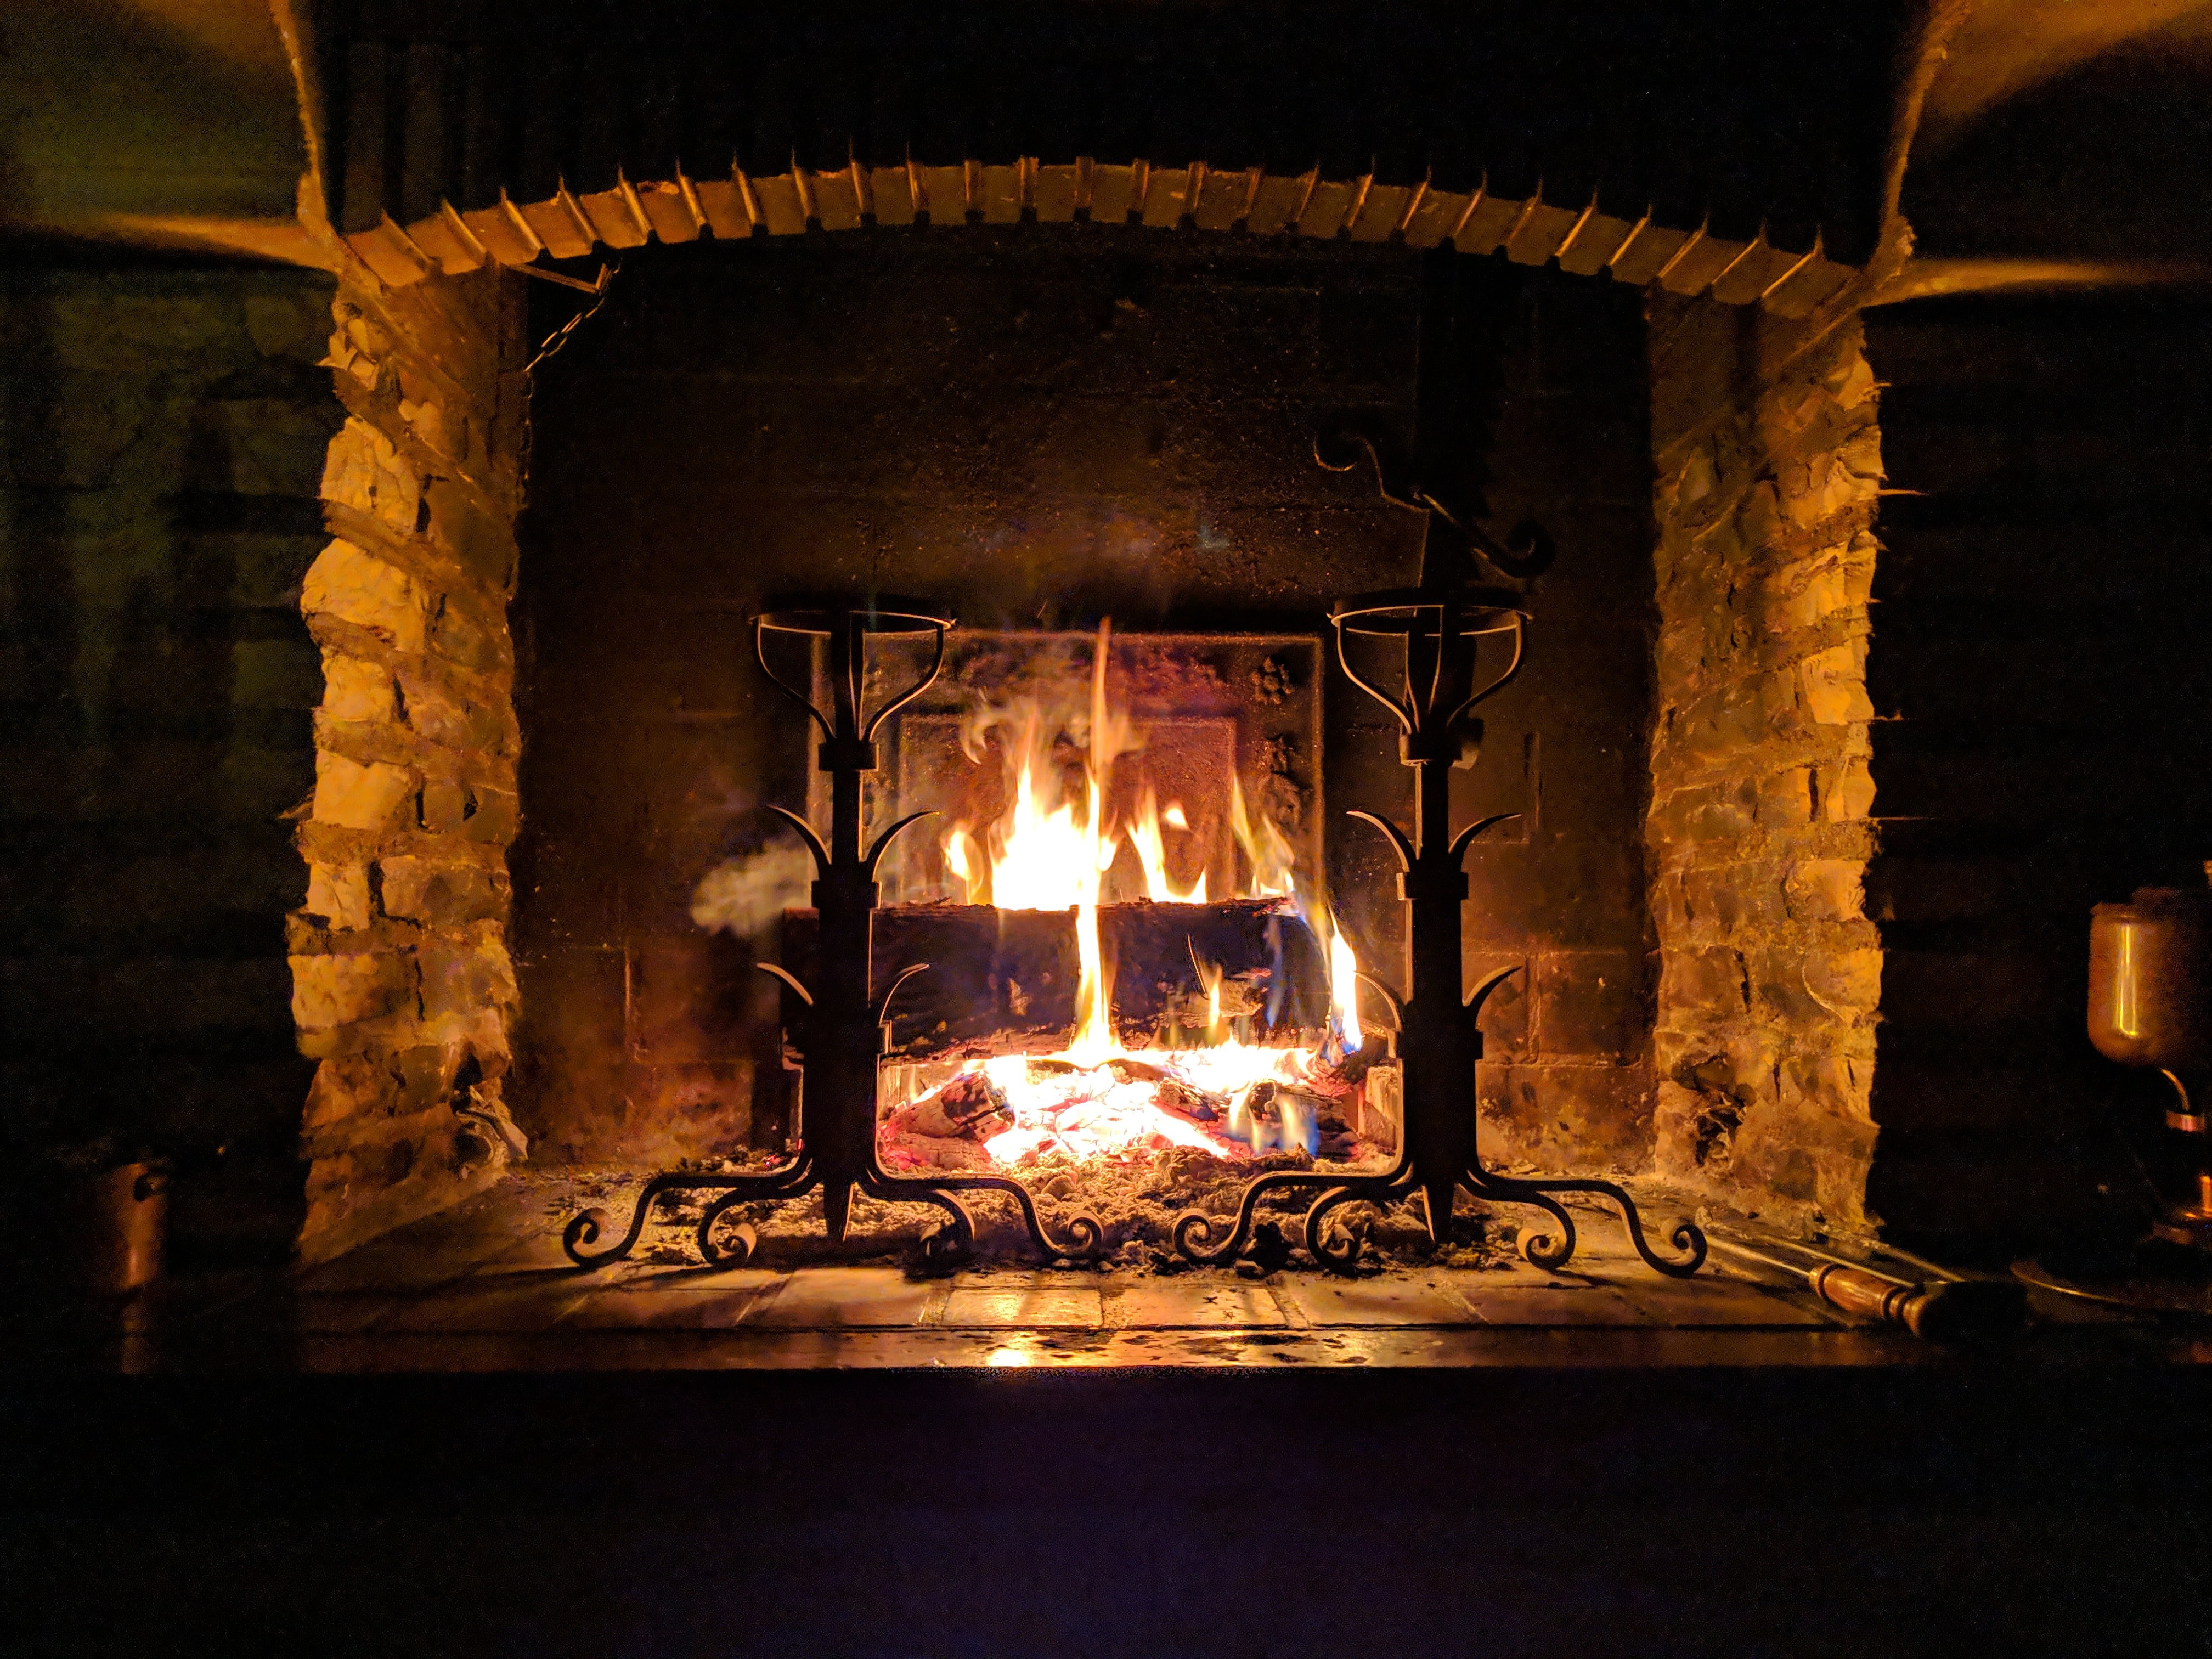 Soirées d’hiver au coin du feu : voici comment profiter d’une ambiance chaleureuse en toute sécurité
